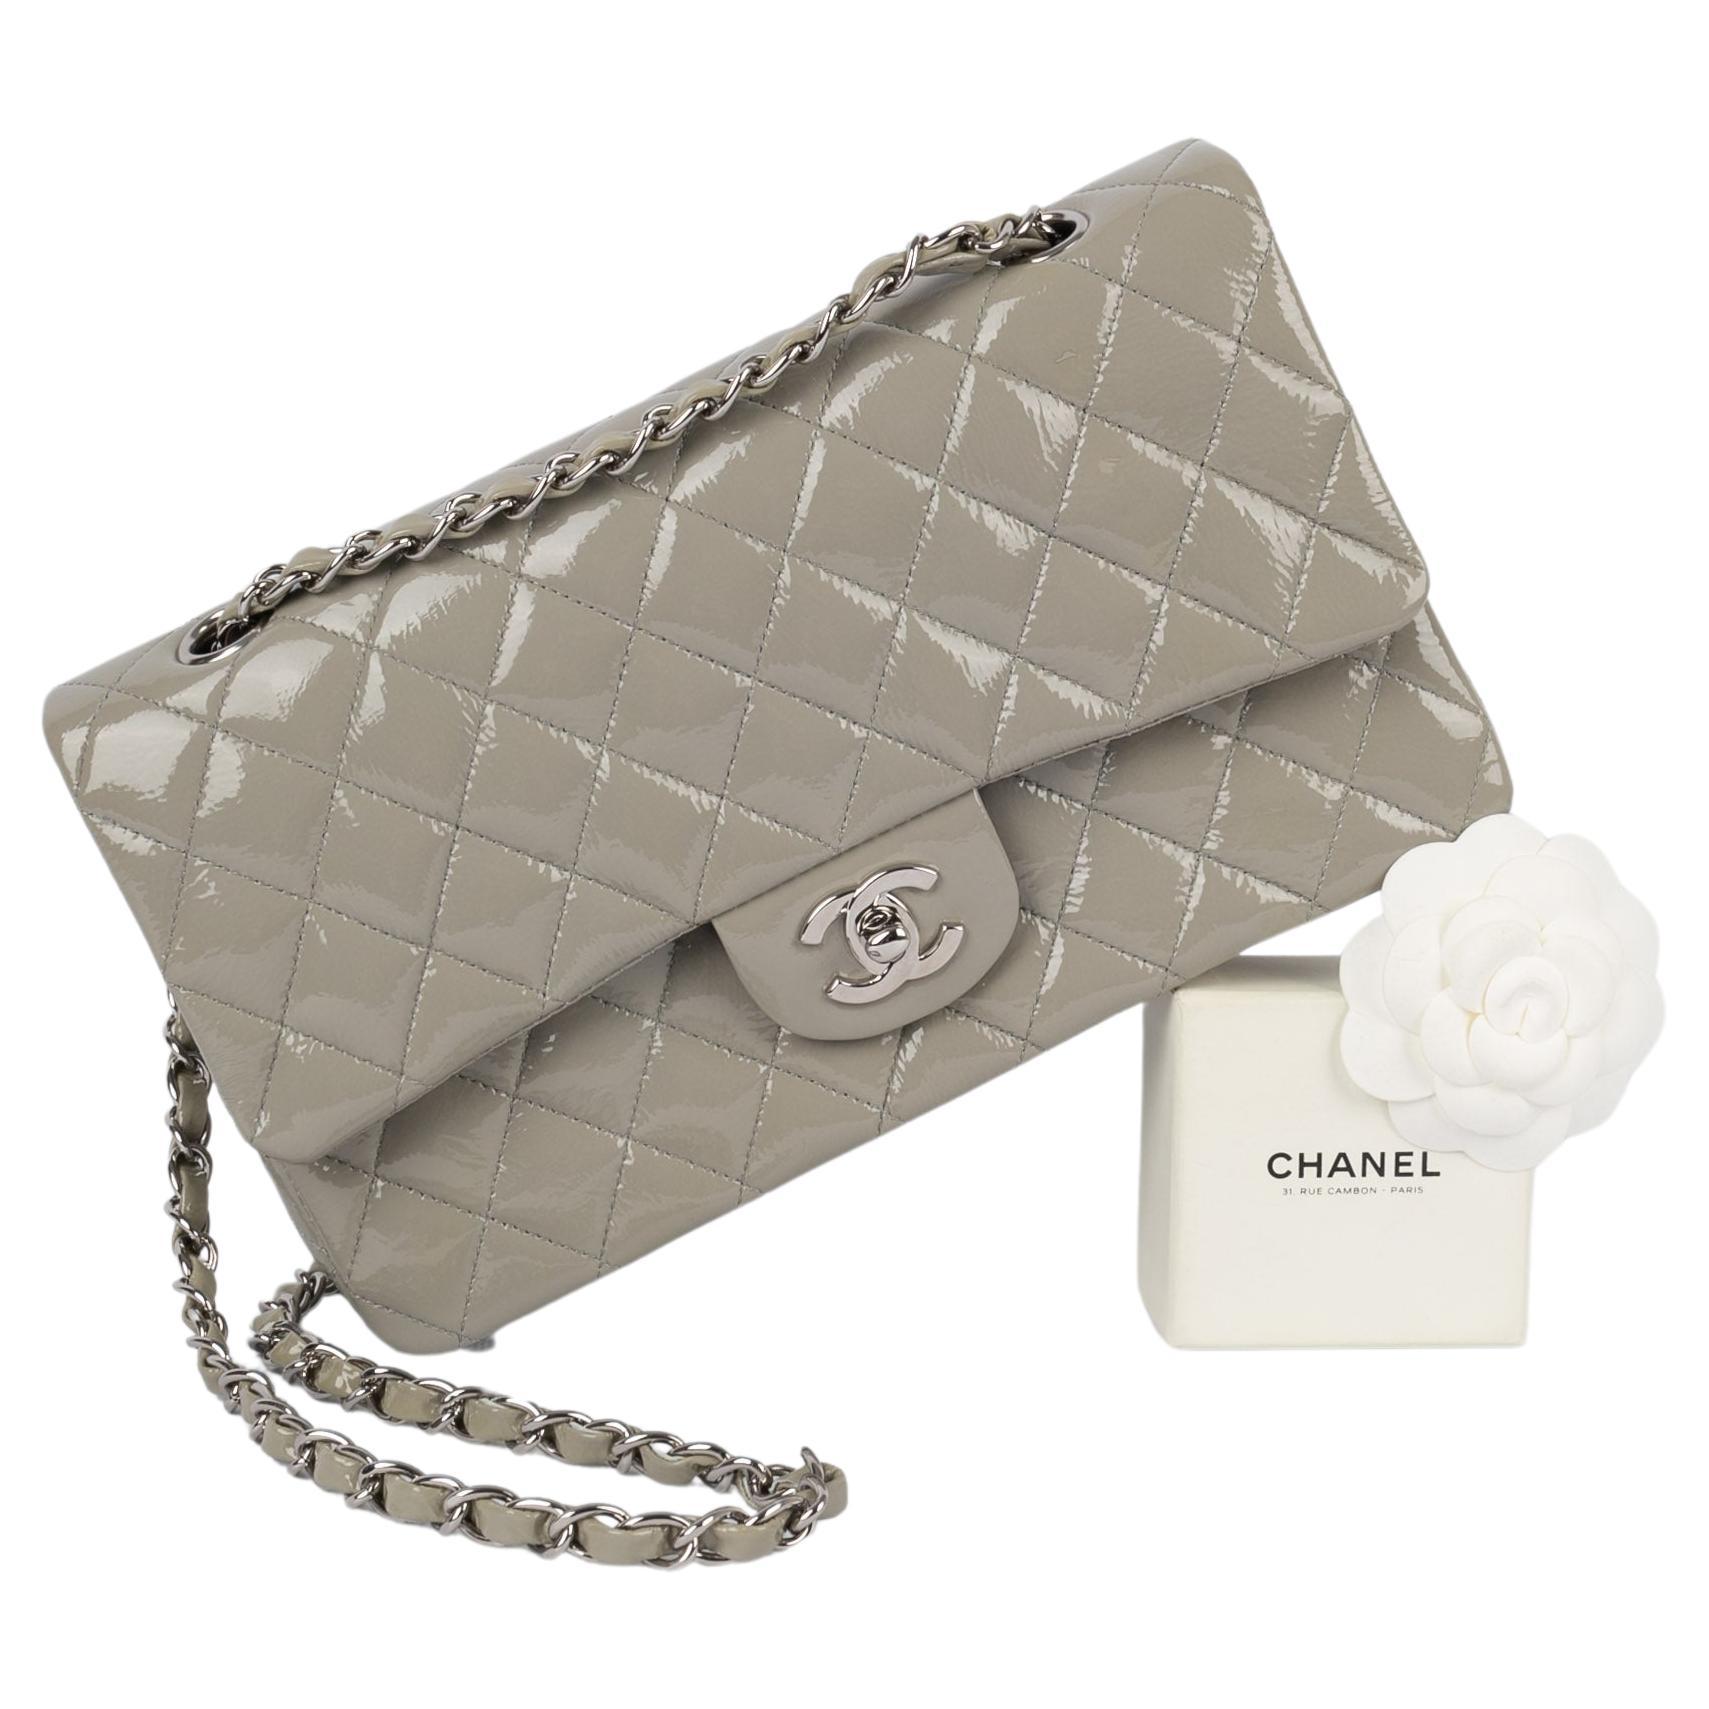 Chanel bag 2008/2009